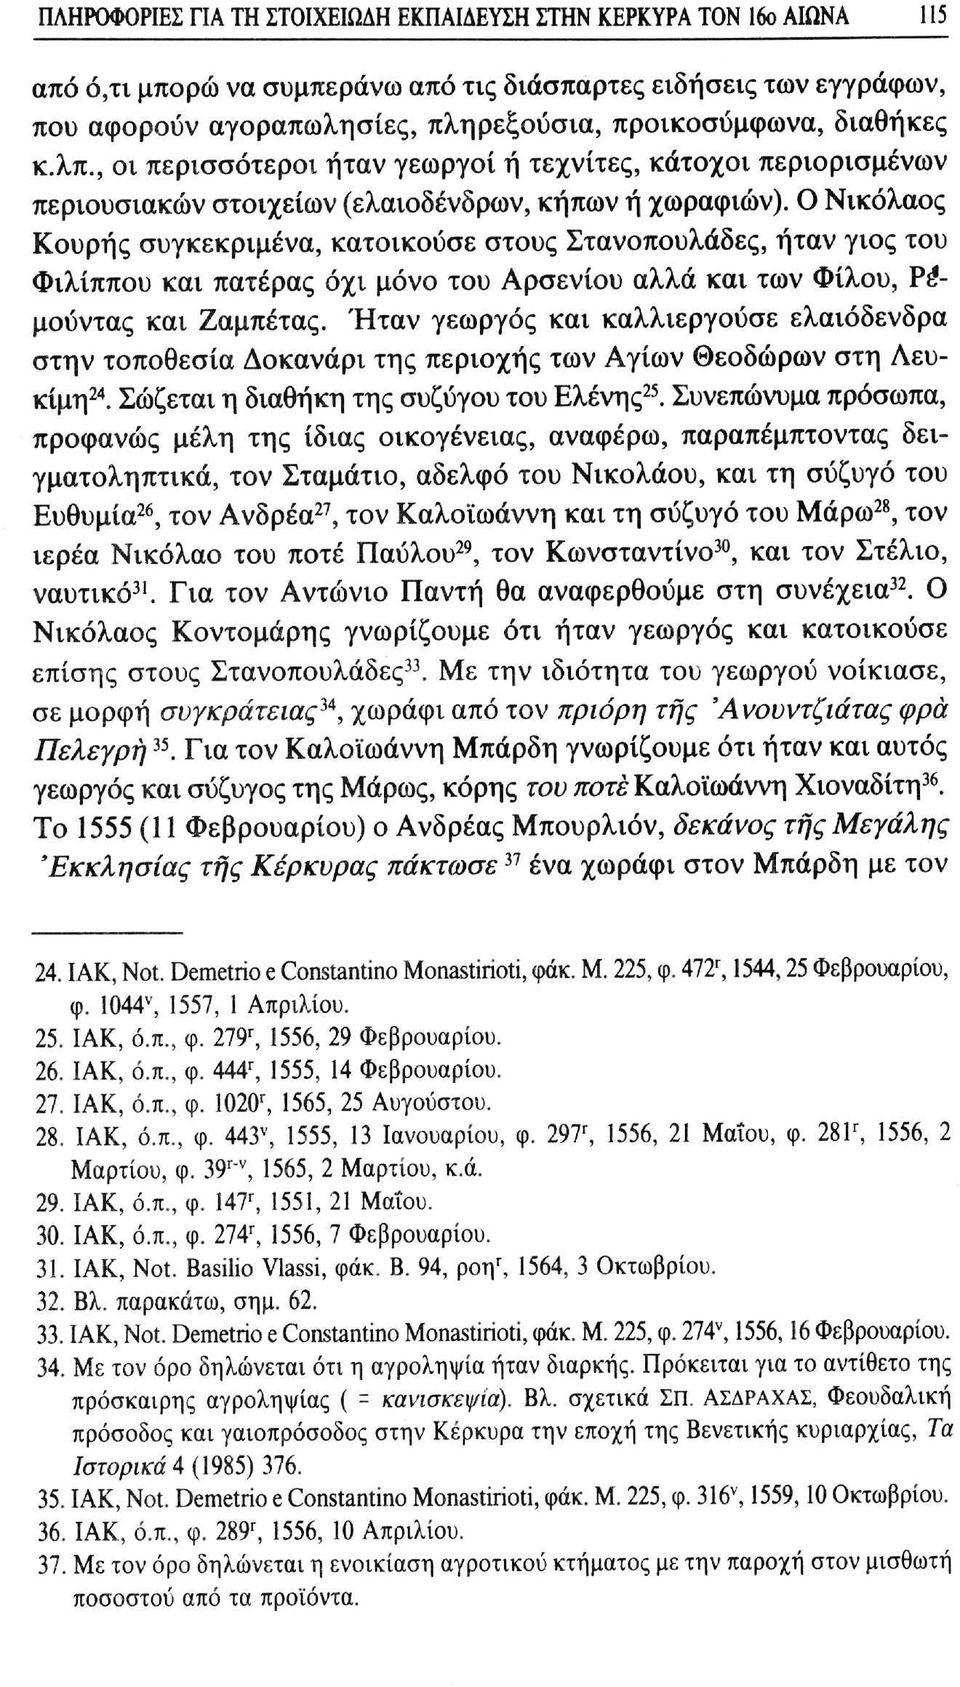 Ο Νικόλαος Κουρής συγκεκριμένα, κατοικούσε στους Στανοπουλάδες, ήταν γιος του Φιλίππου και πατέρας όχι μόνο του Αρσενίου αλλά και των Φίλου, Ρέμούντας και Ζαμπέτας.